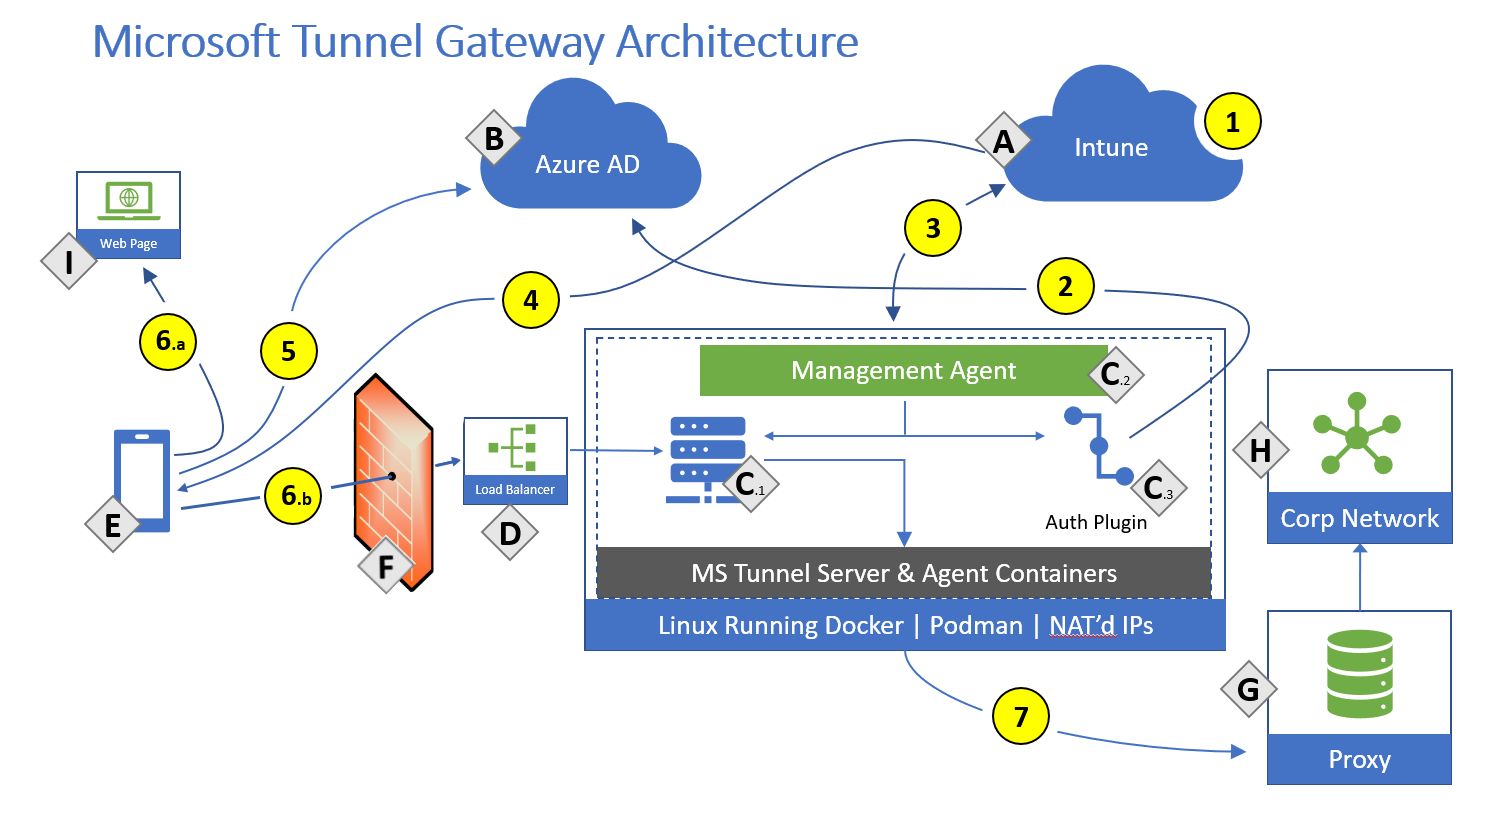 Dibujo de la arquitectura de la puerta de enlace de Microsoft Tunnel